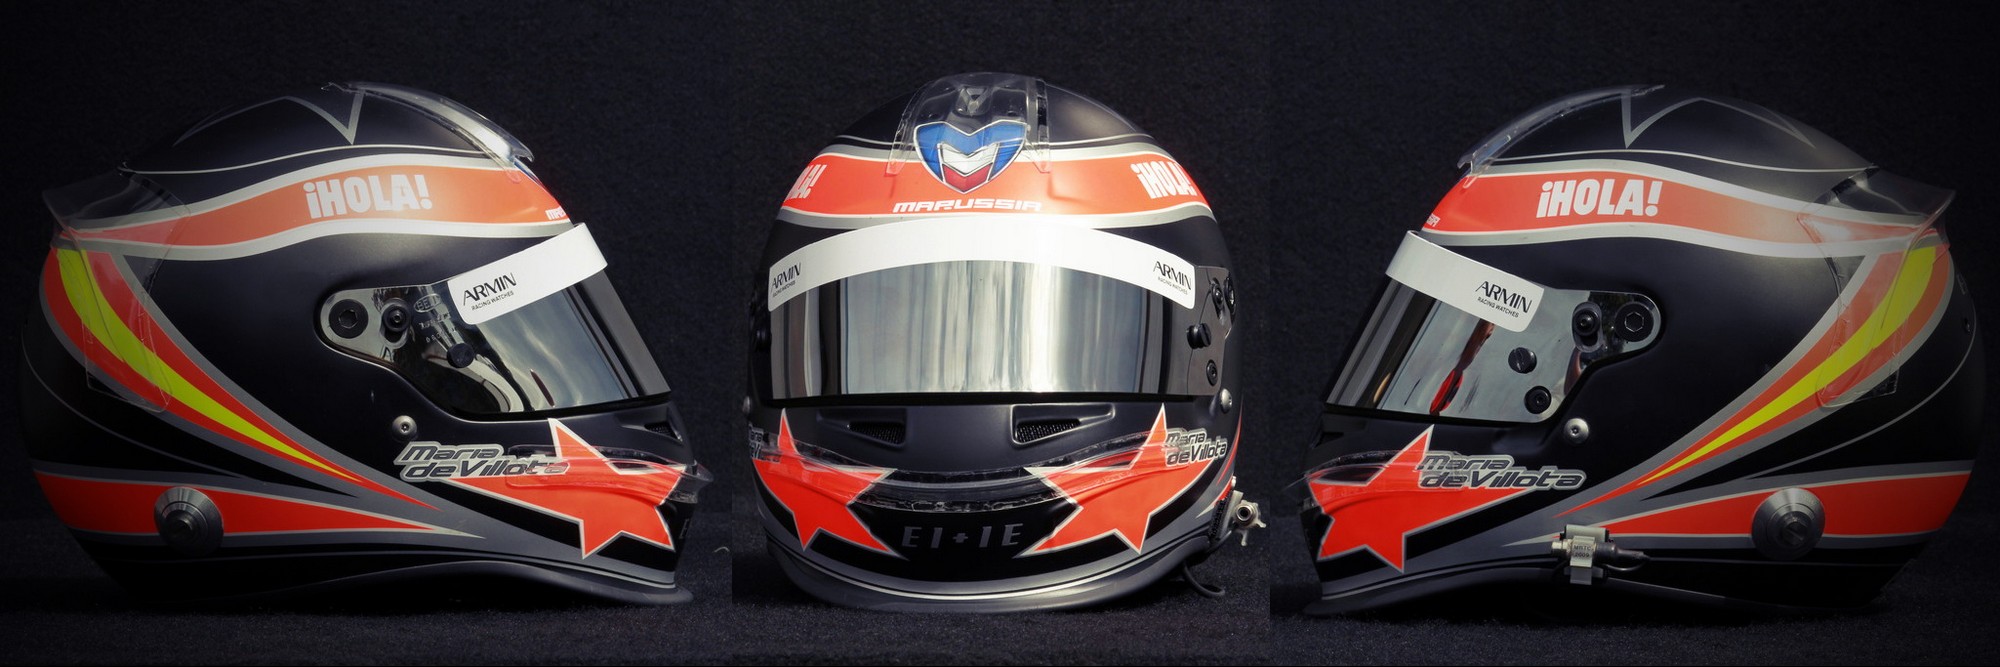 Шлем Марии де Вийотта на сезон 2012 года | 2012 helmet of Maria de Villota